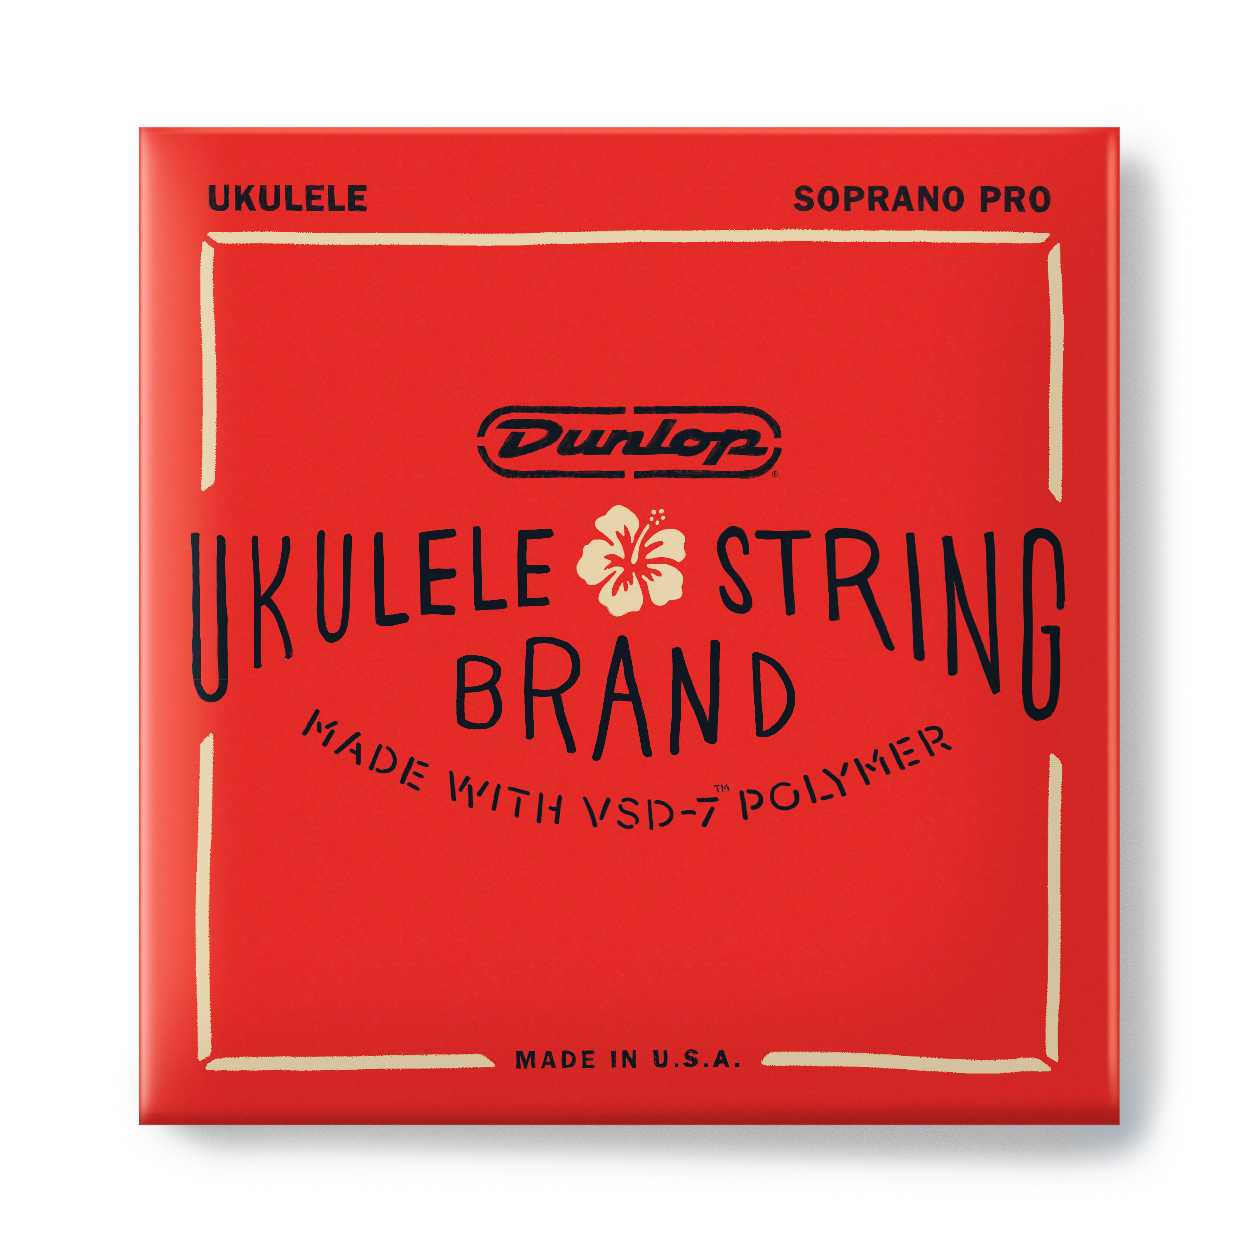 Dunlop Ukulele String Brand - DUQ201 - Ukulele String Set, Soprano, Pro